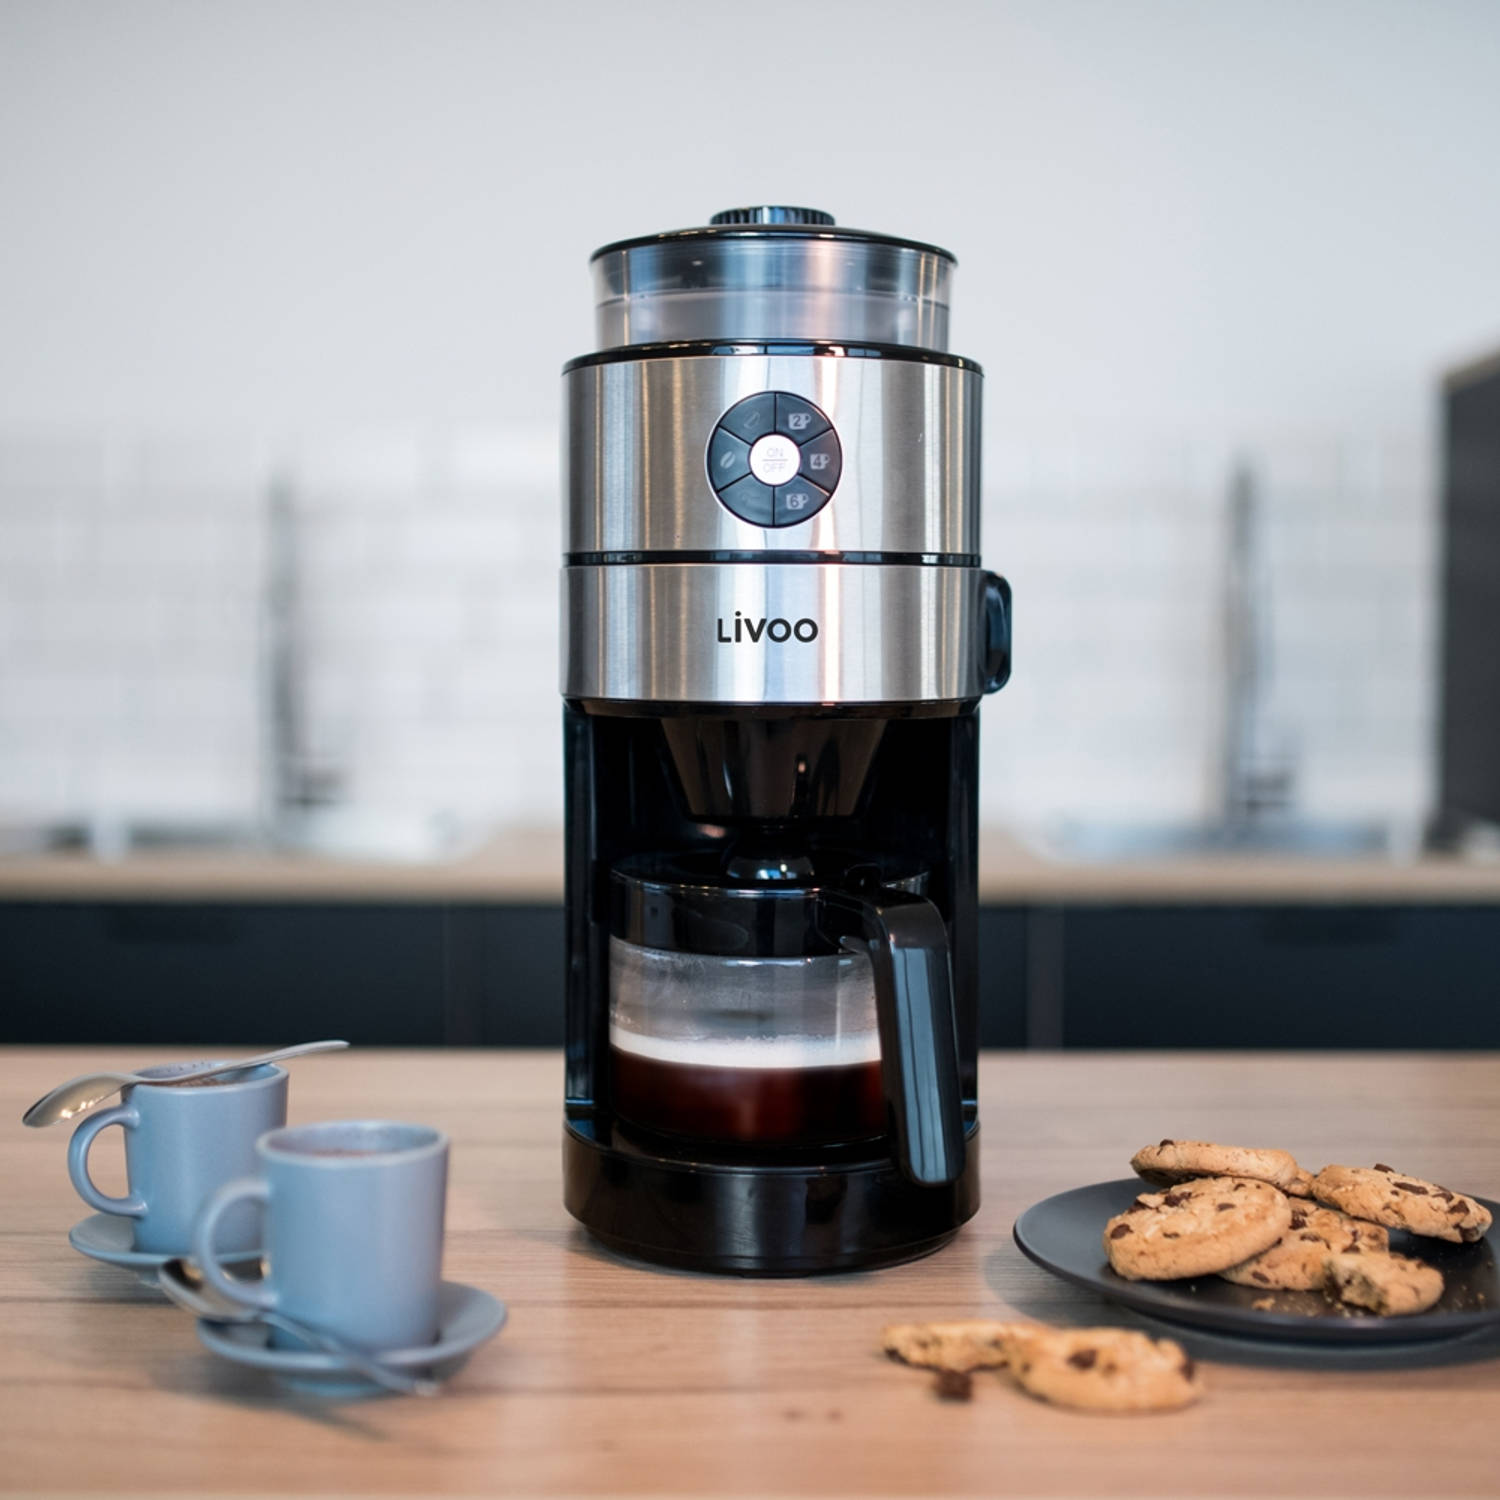 Opstand kopen draagbaar Livoo koffiezetapparaat met geïntegreerde koffiemolen | Blokker